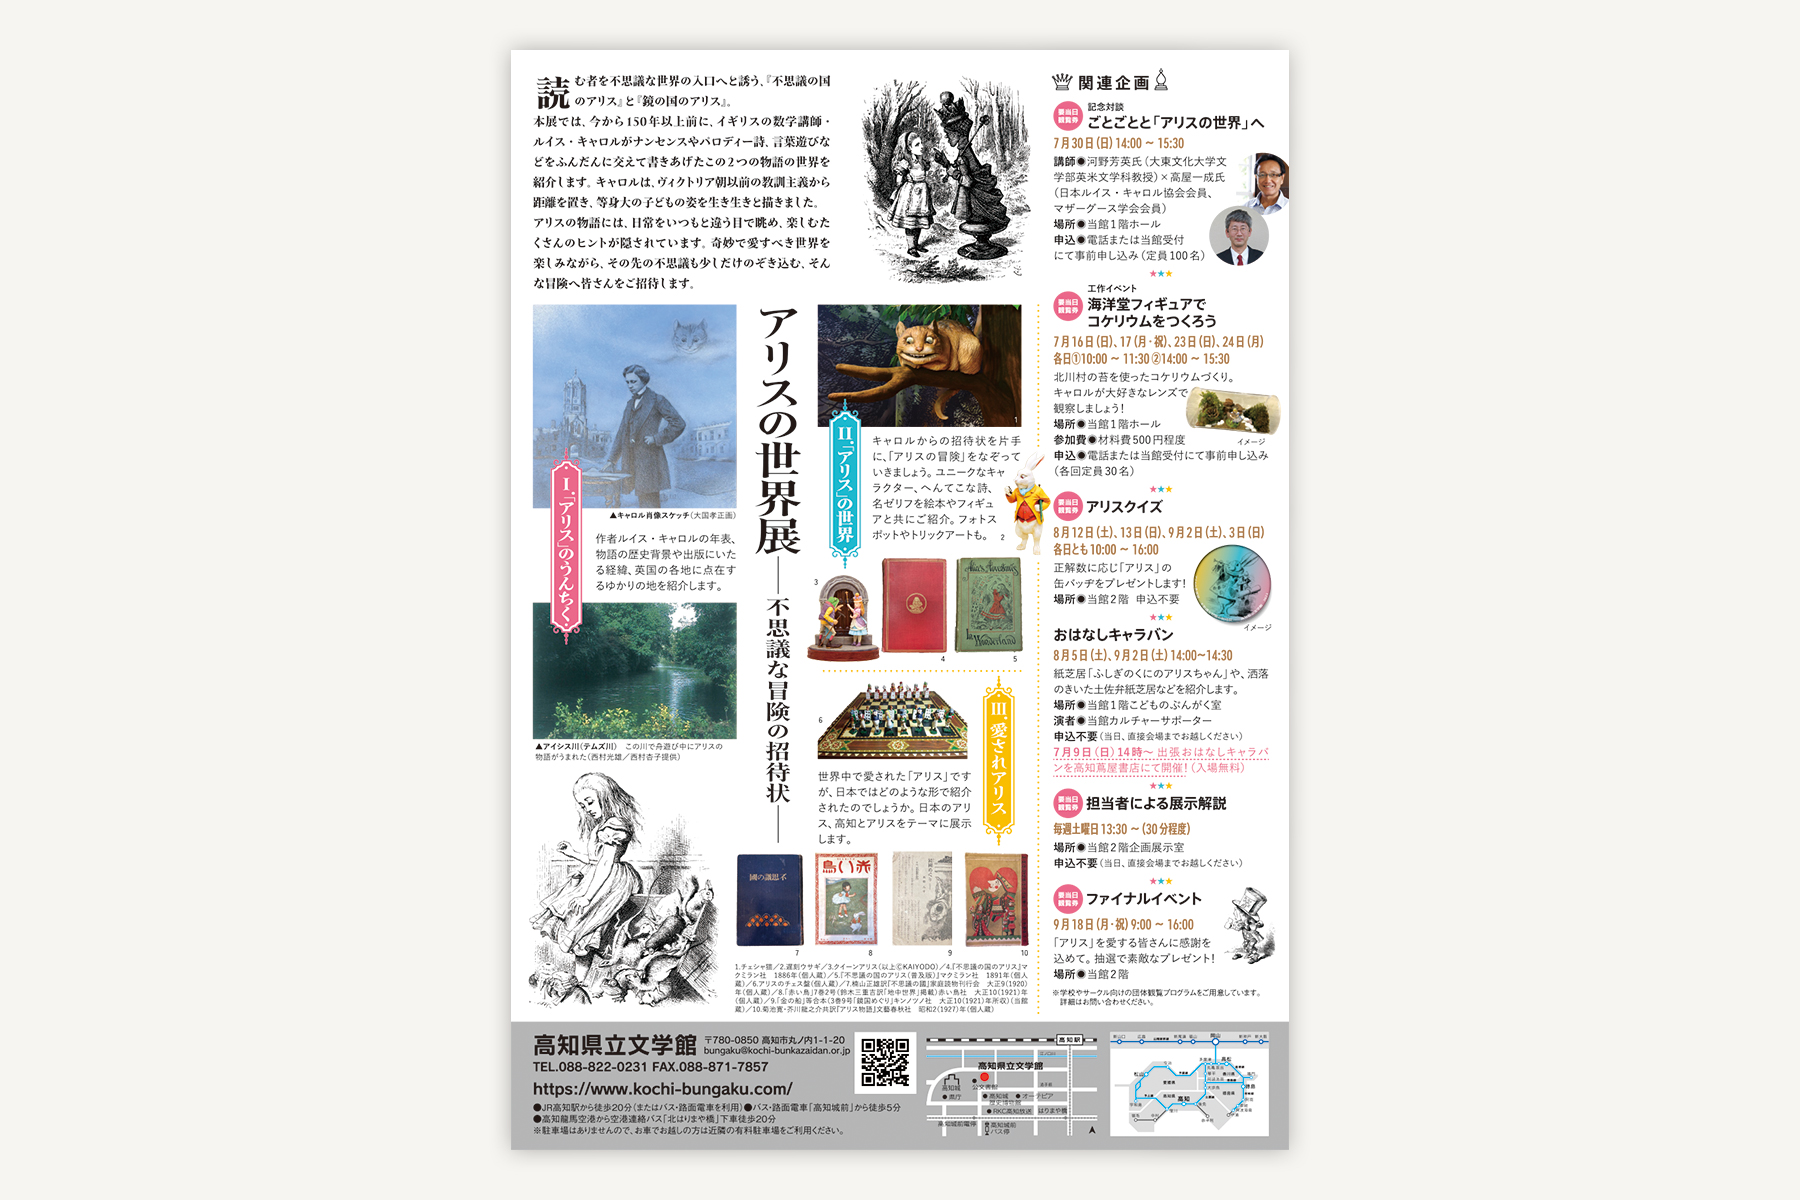 高知県立文学館『アリスの世界展 不思議な冒険の招待状』